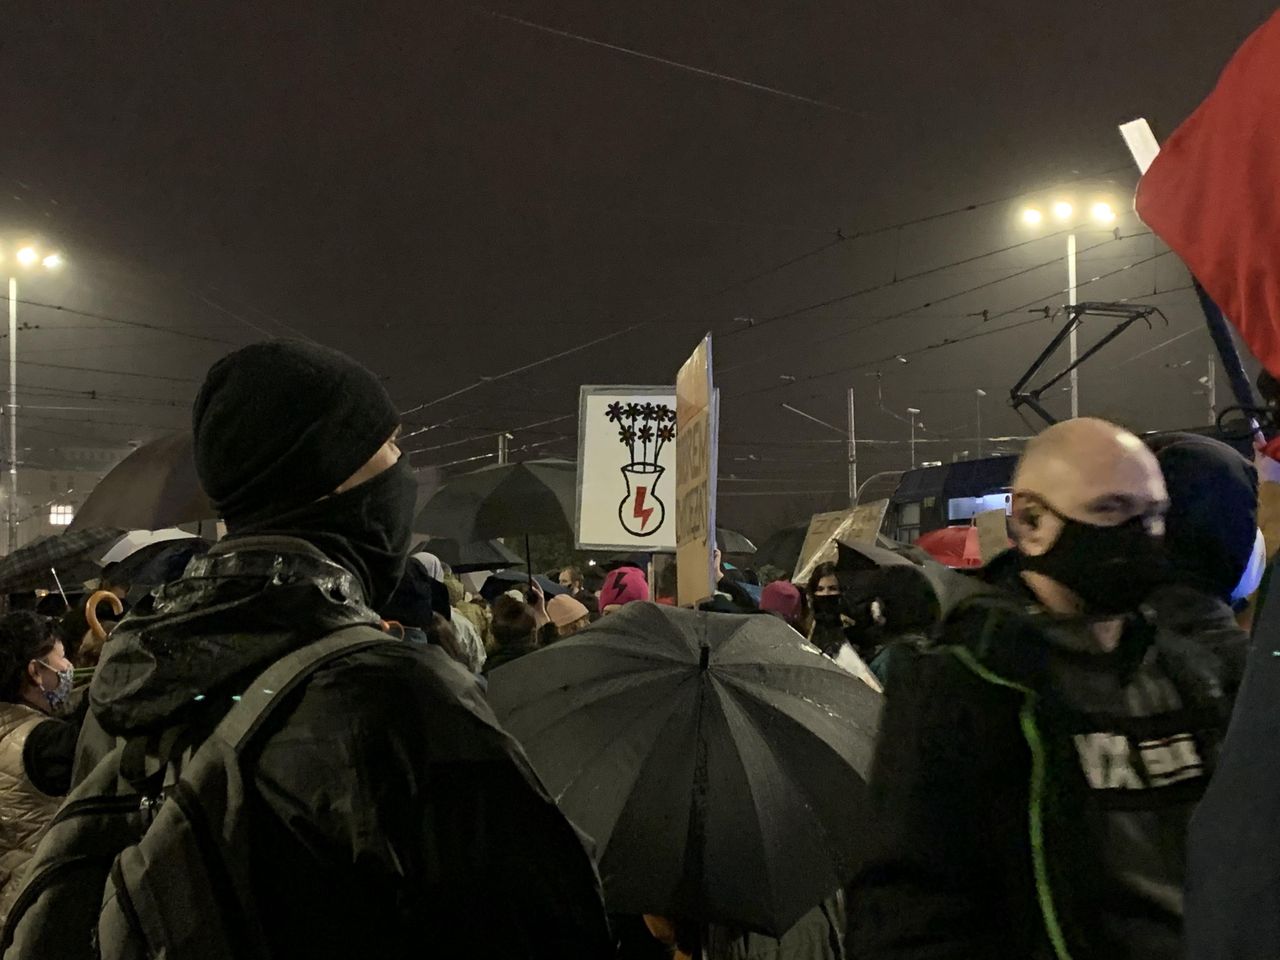 Strajk kobiet. Wrocław. Pobił dziennikarkę na proteście. Usłyszał zarzuty